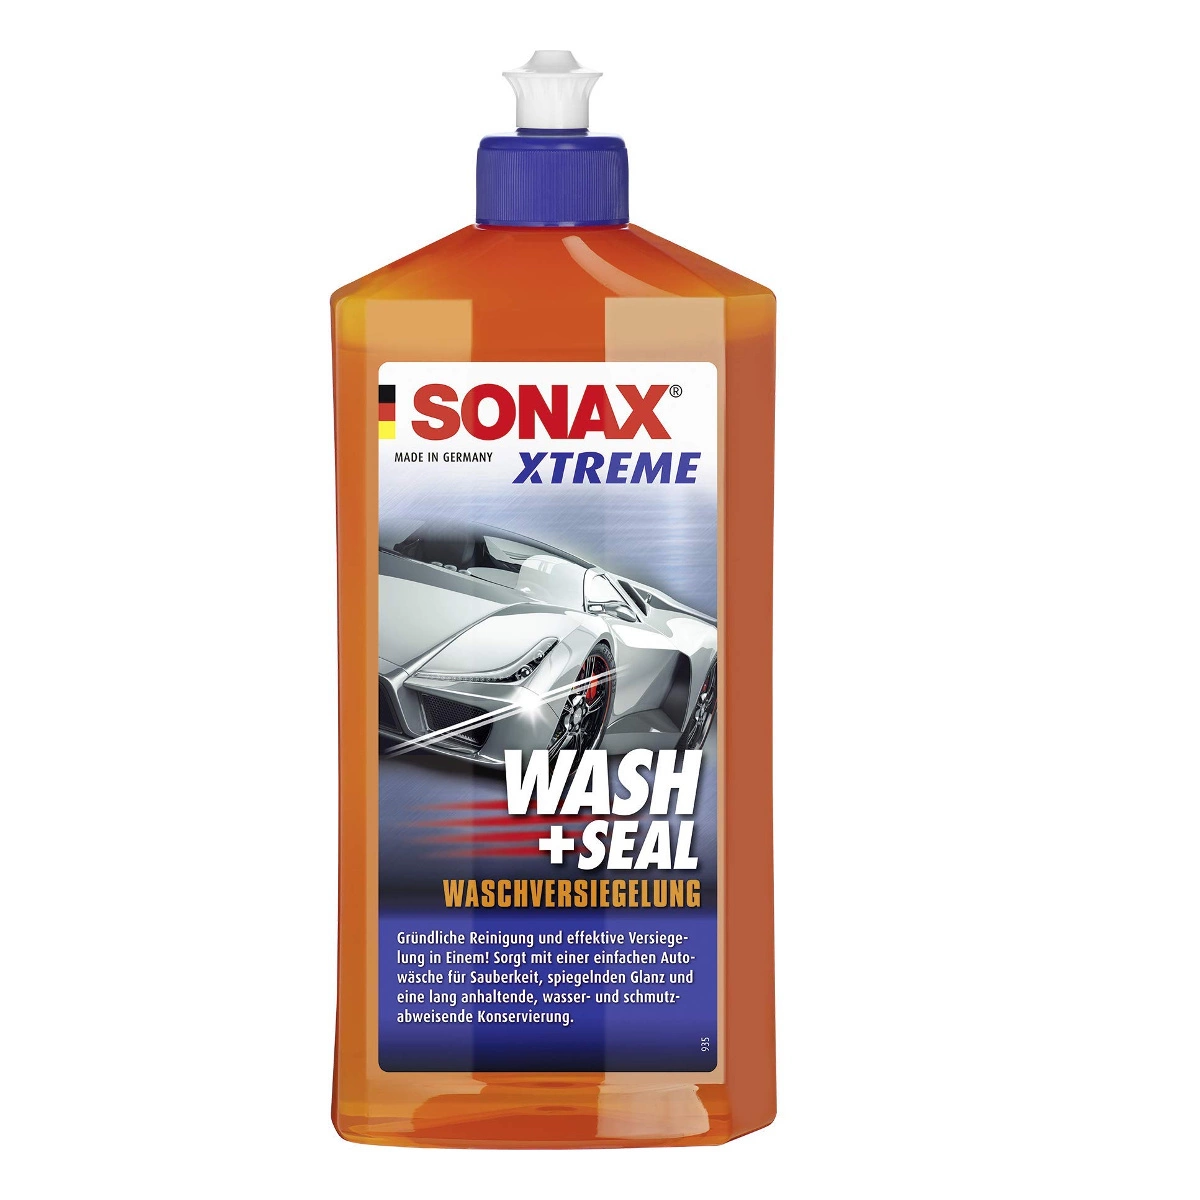 sonax szampon z powloką